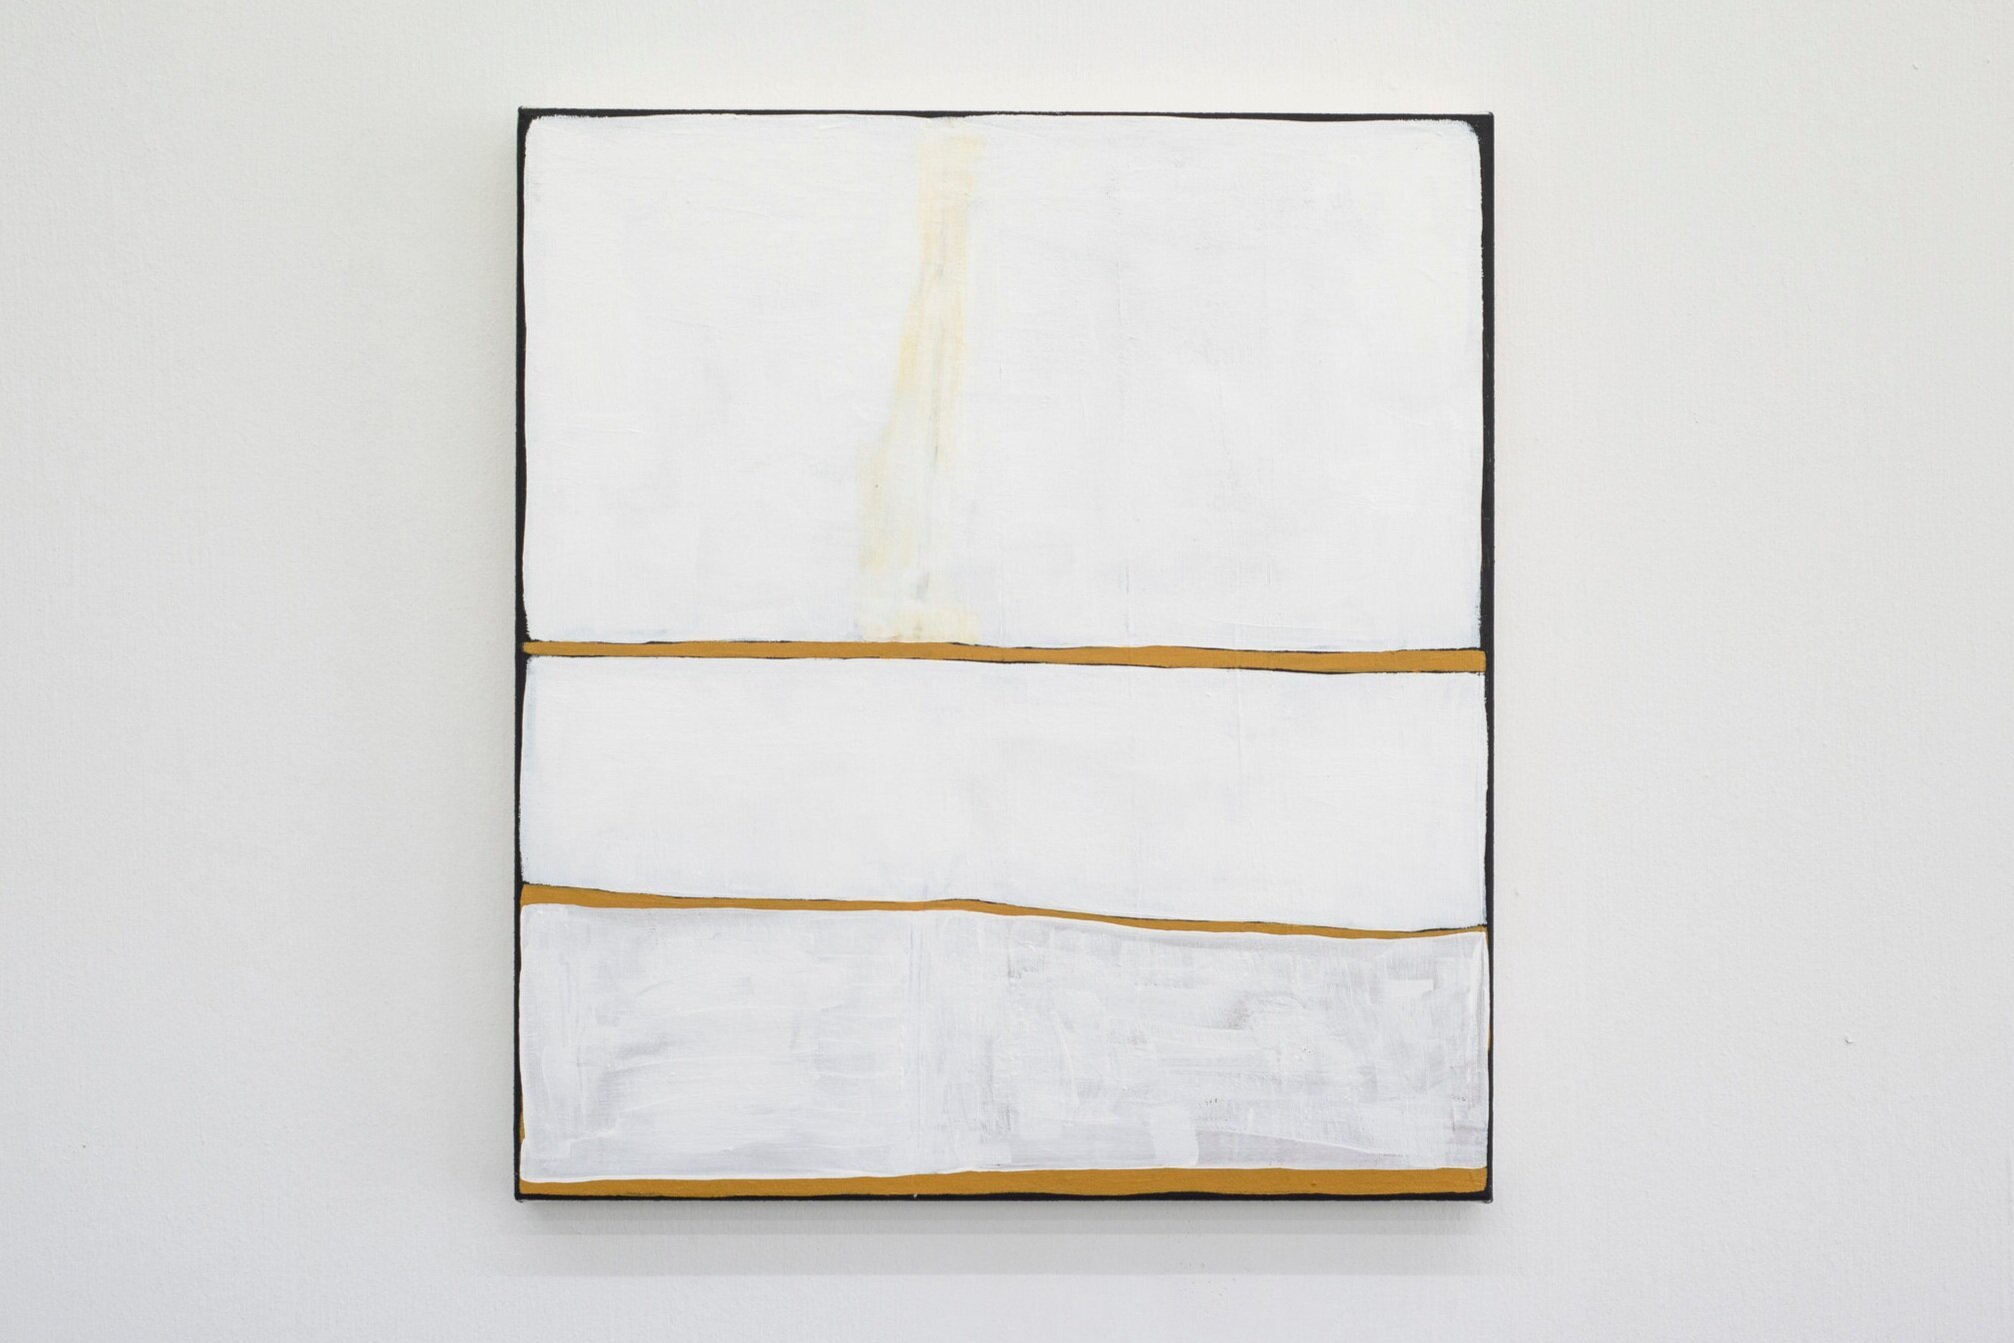 Three lines, three horizons (4), 2020, 51 x 41cm, $1600